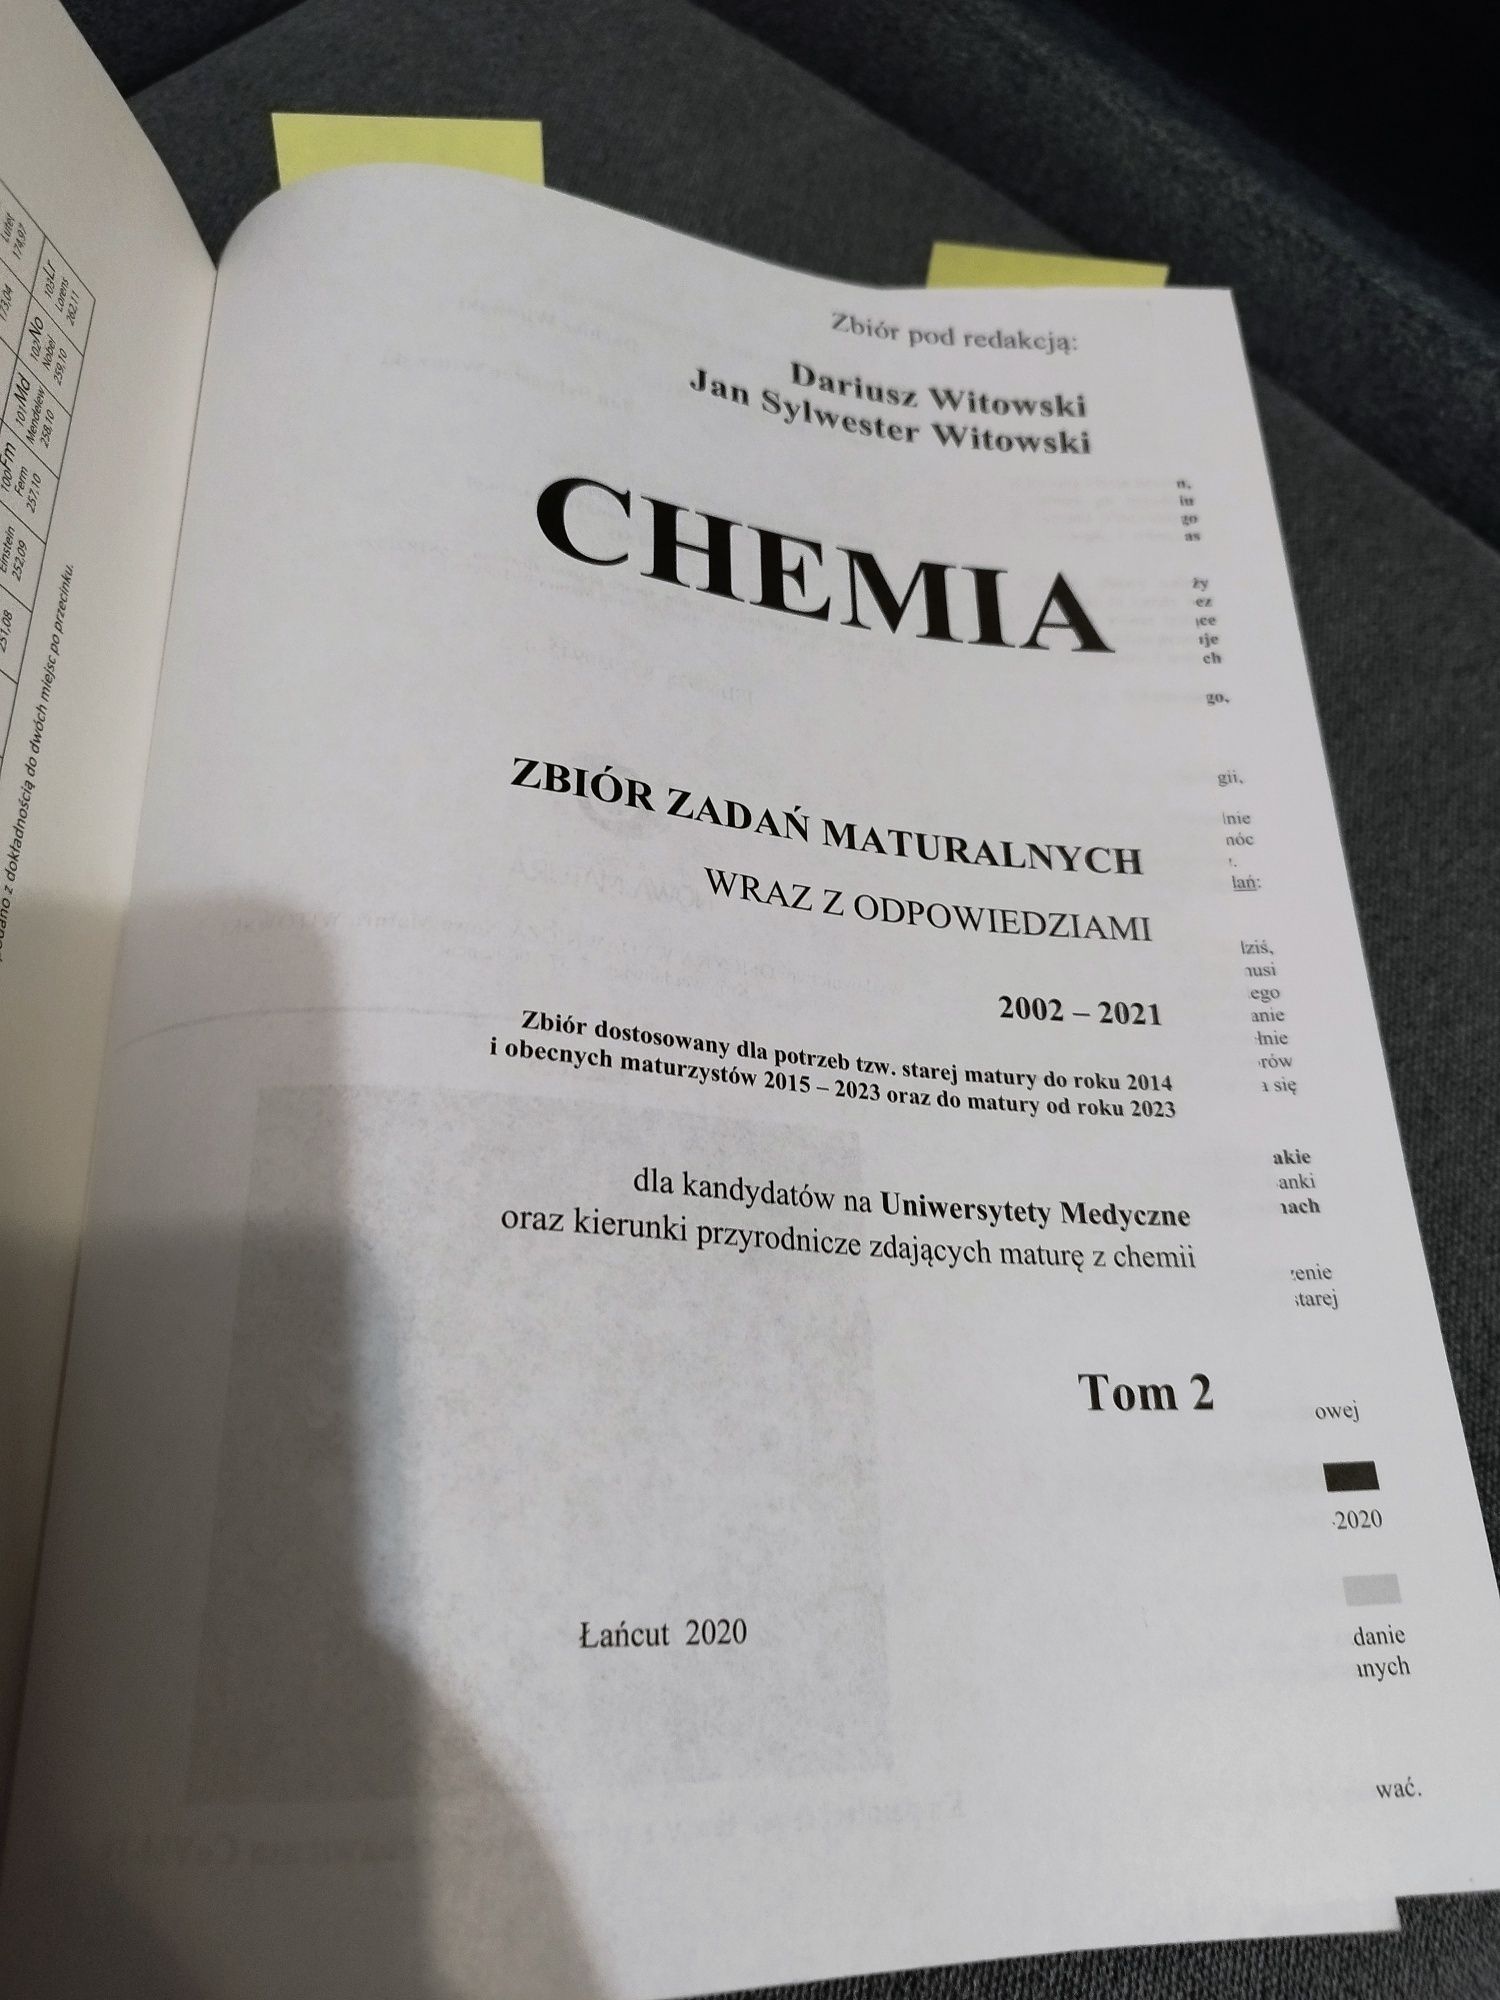 Chemia Witowski zbiór 1,2,3,4 część.